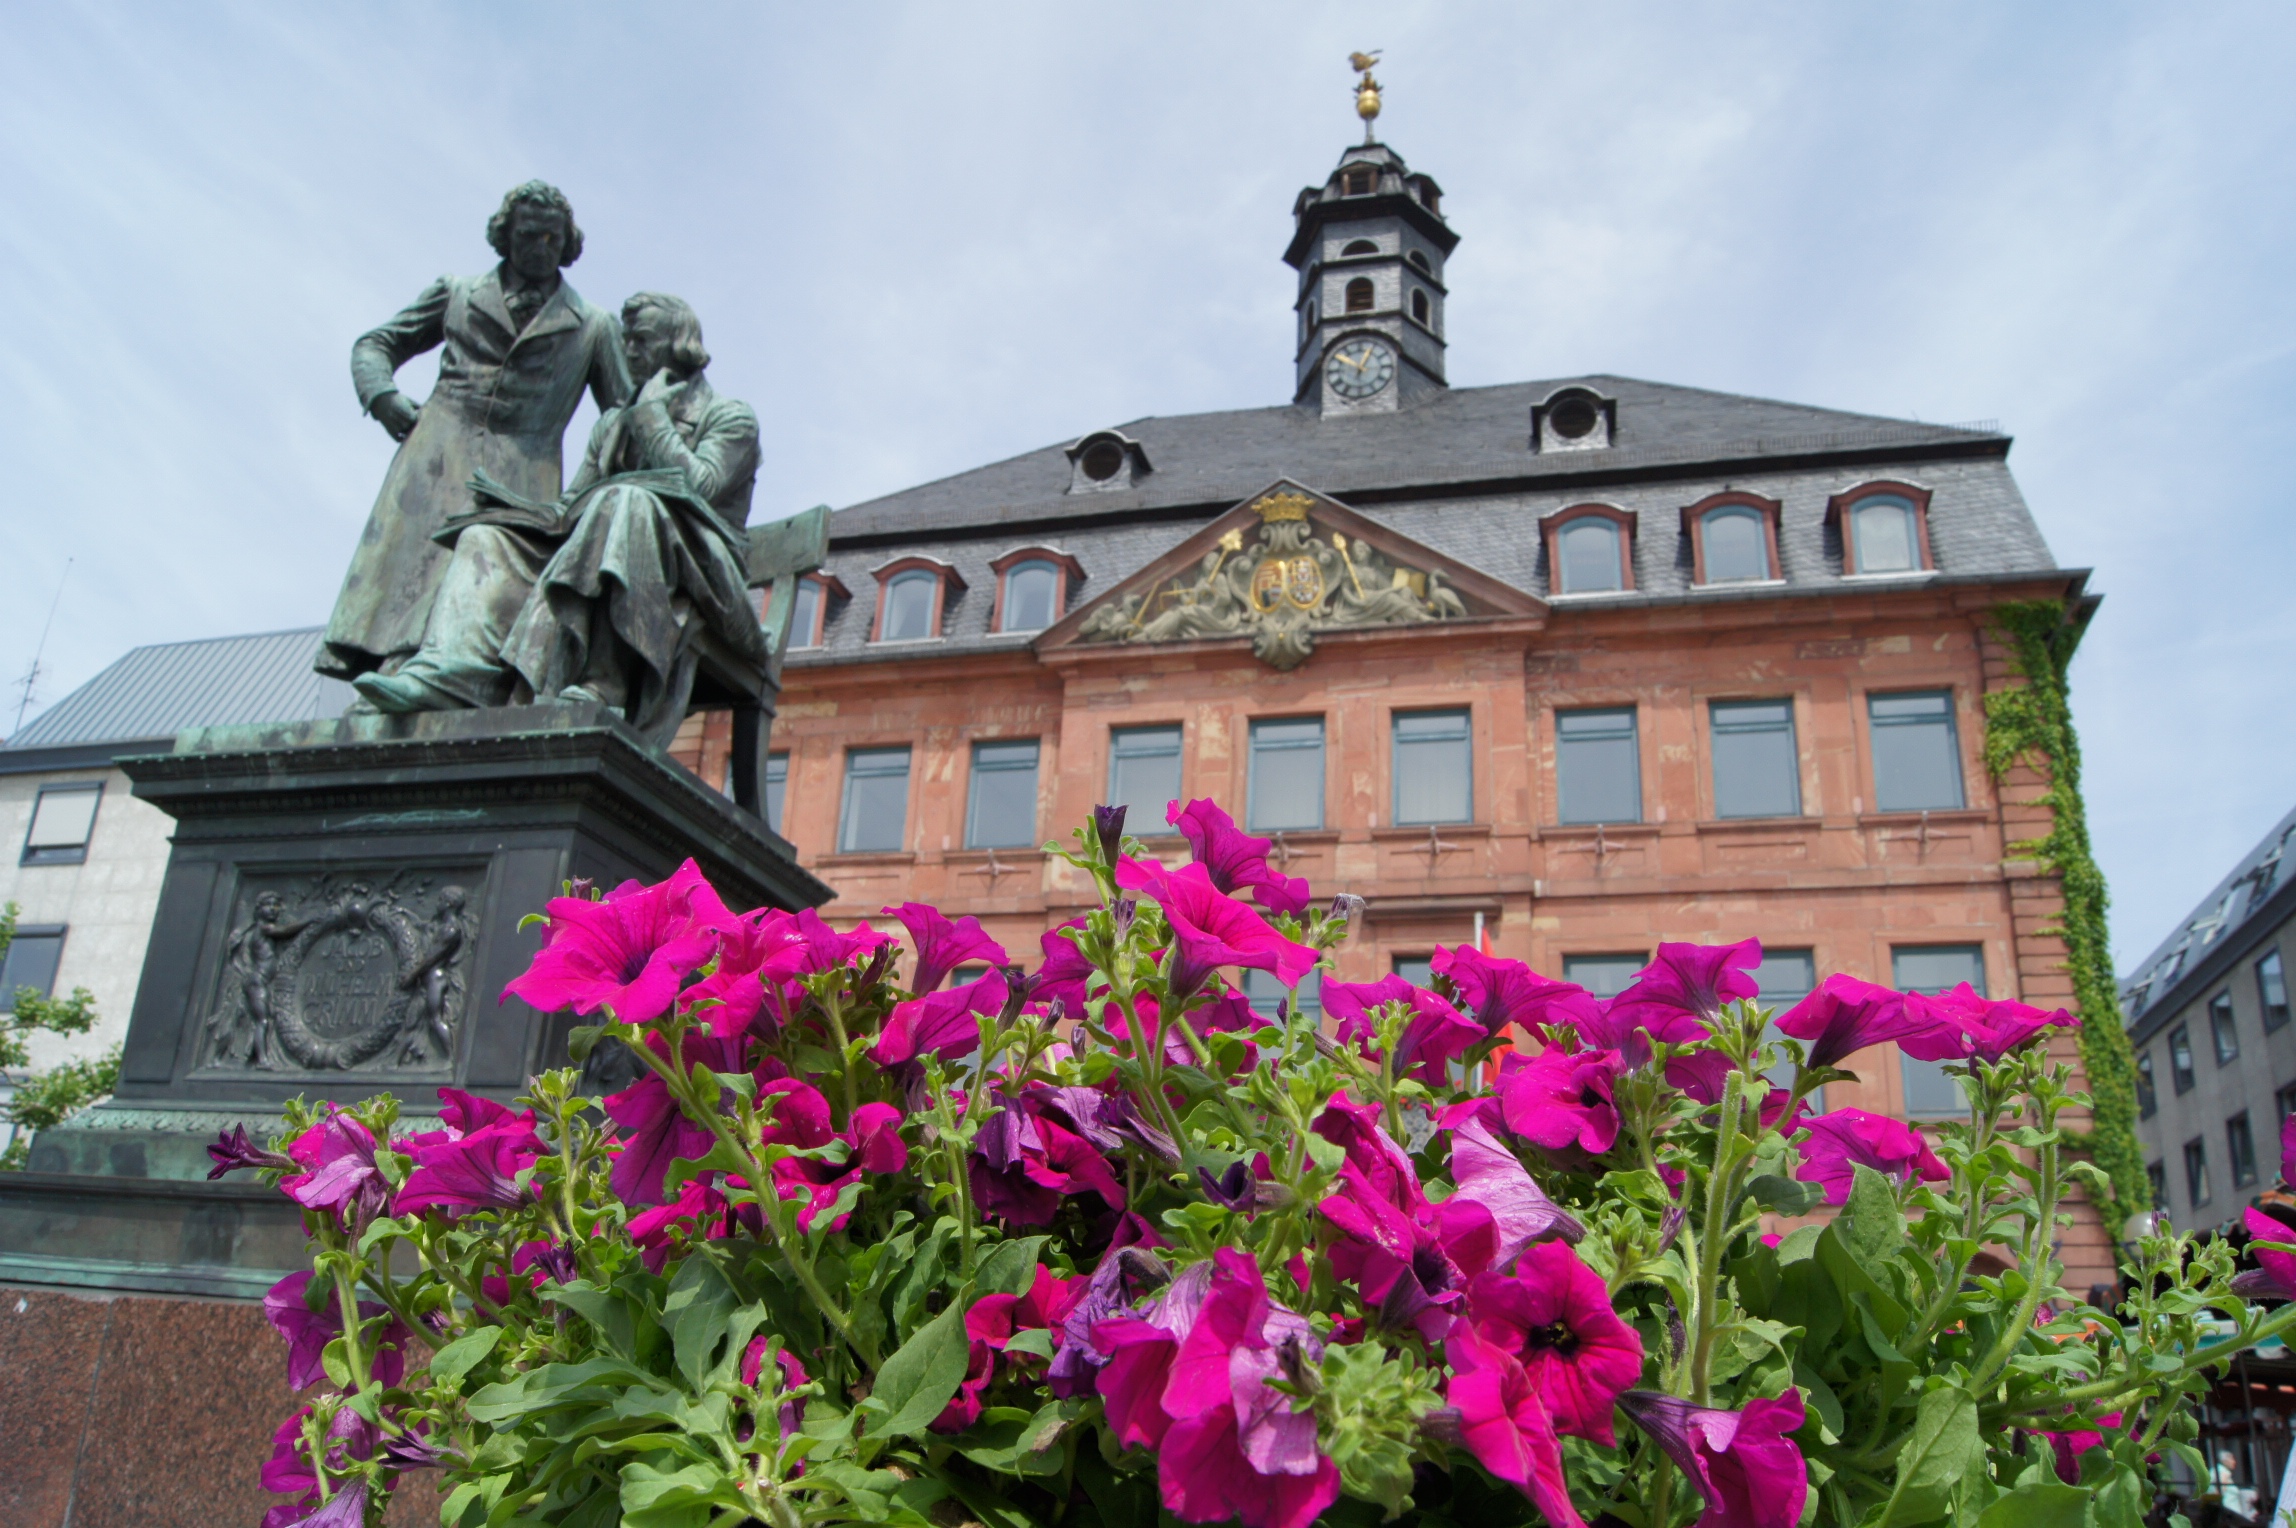 Hanauer Rathaus mit Brüder Grimm Denkmal